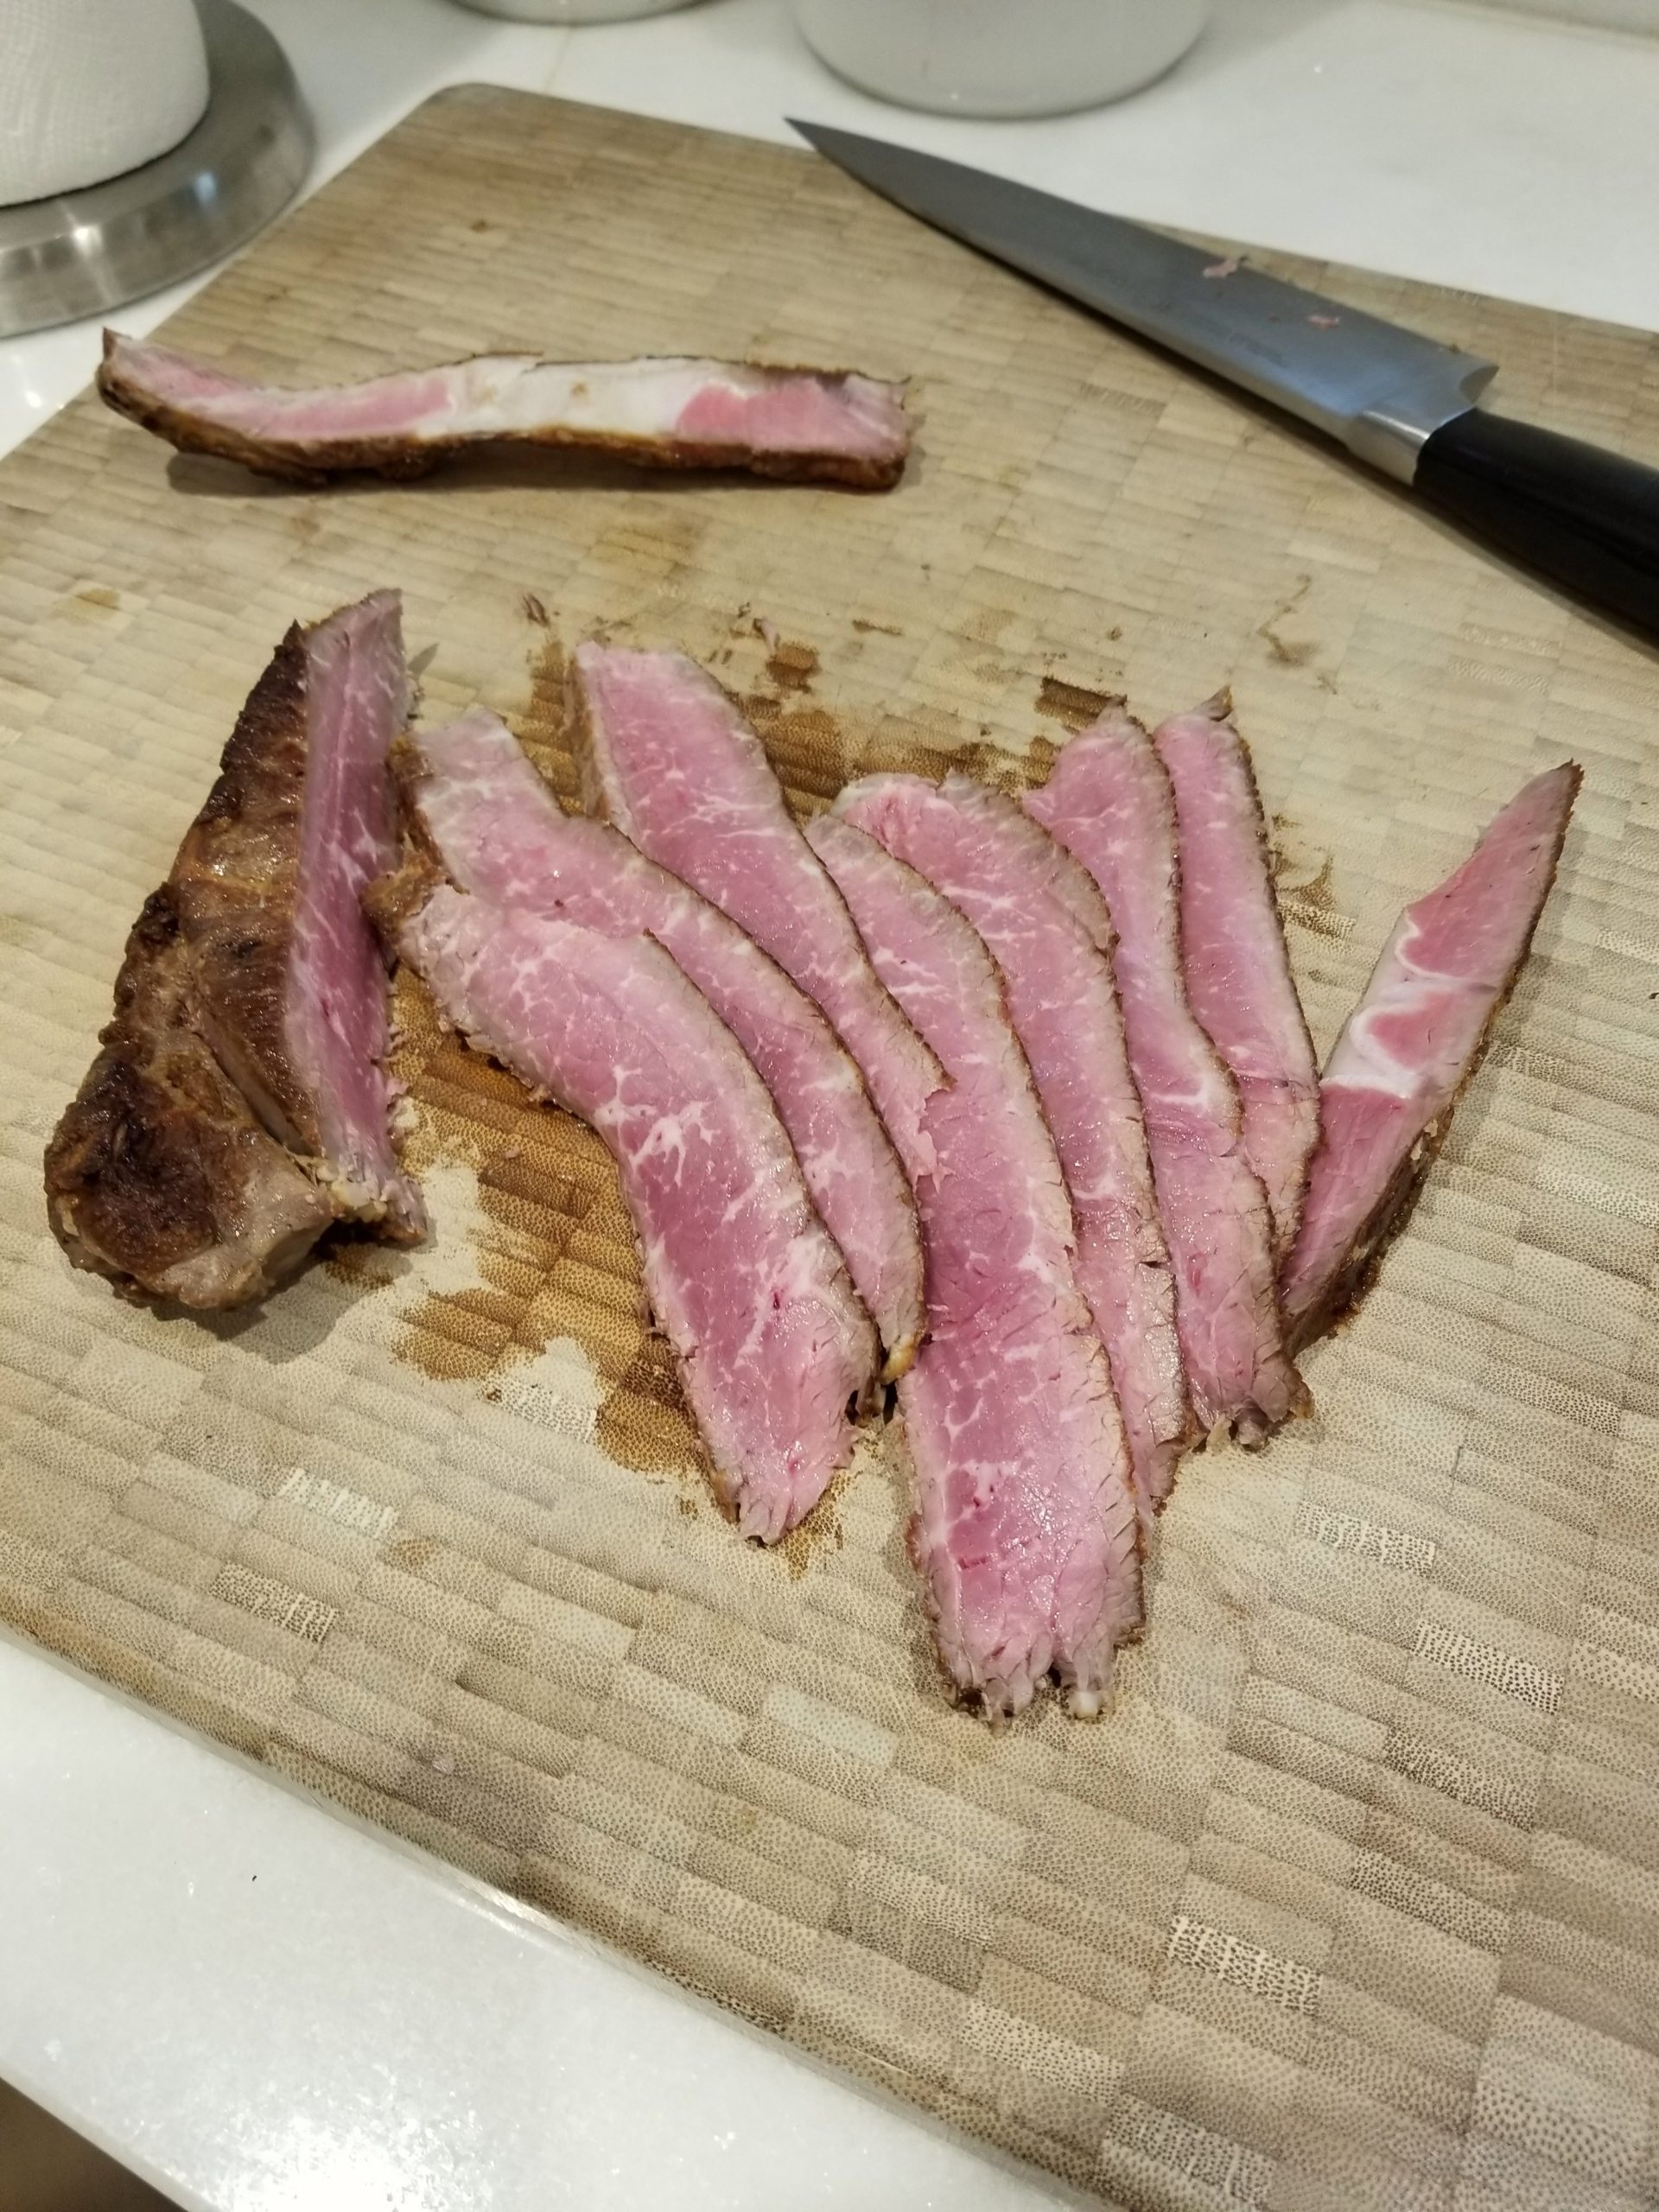 mmm, steak. 